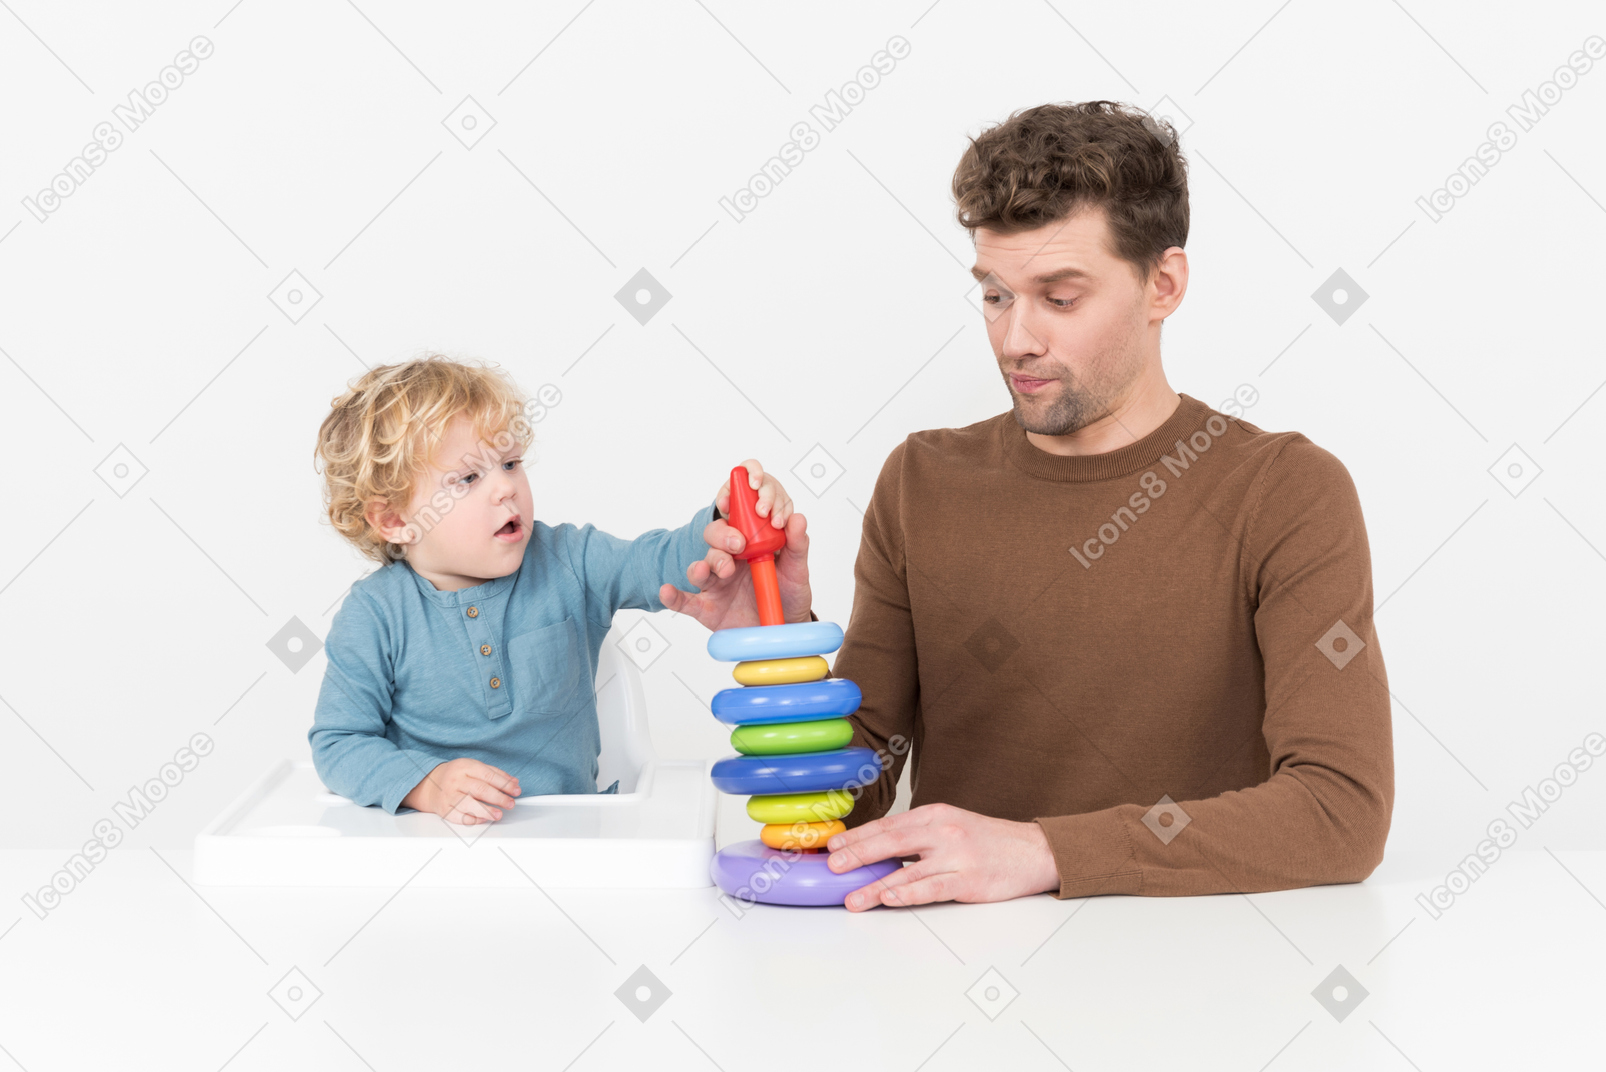 Padre e hijo armando un juguete apilable